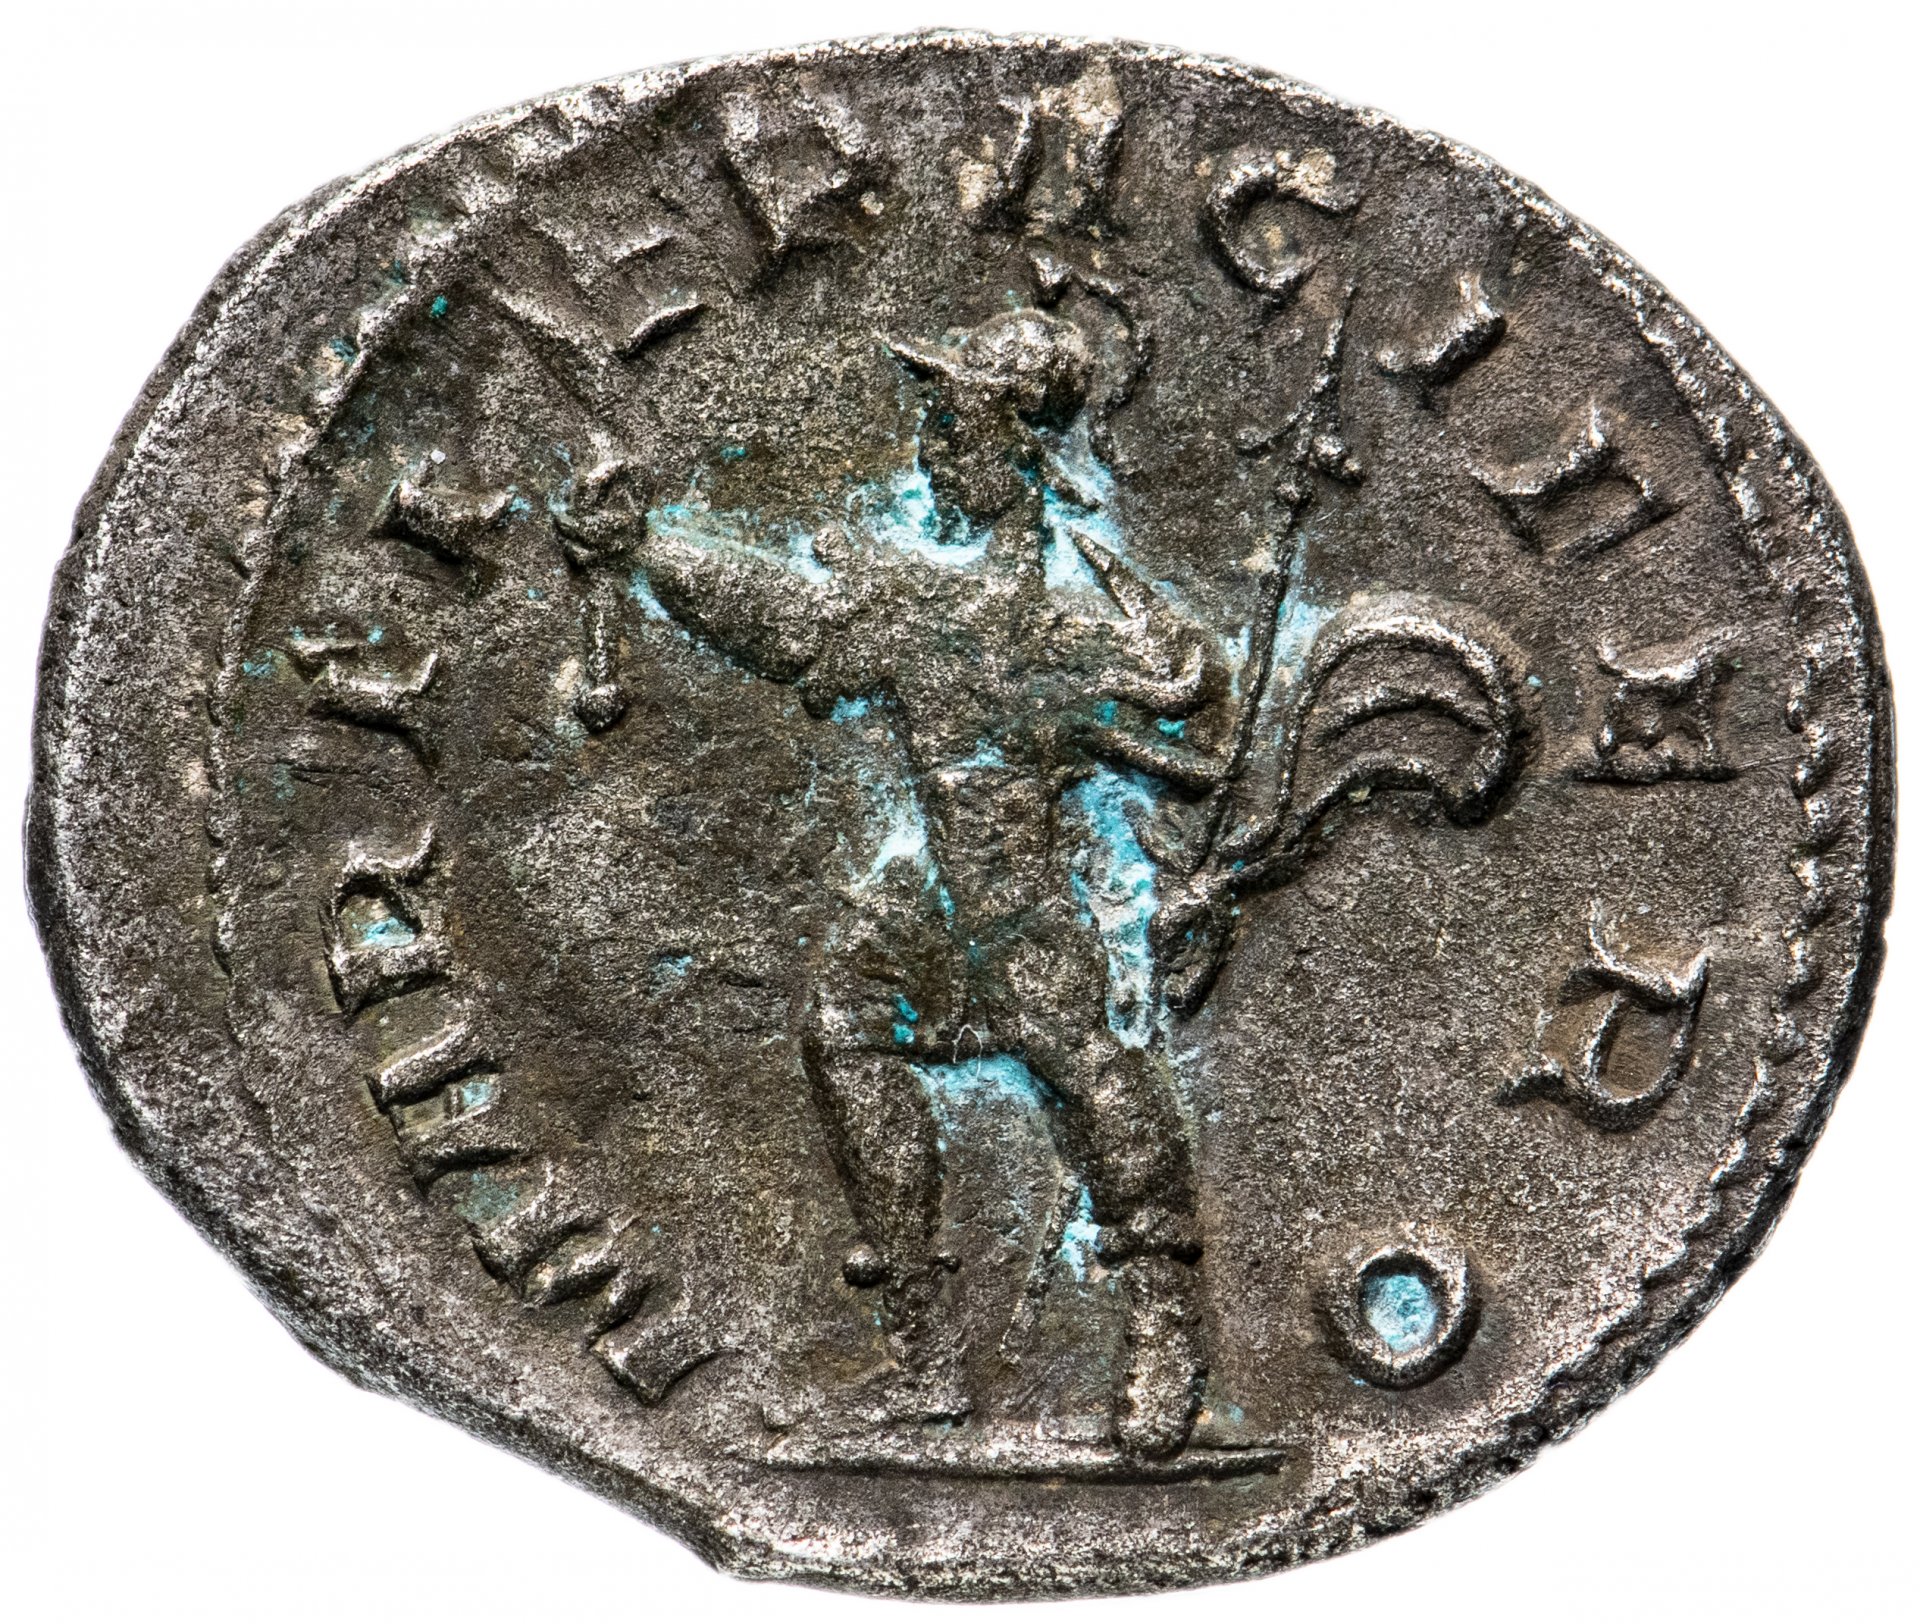 450 Римская монета. Римские монеты в Крыму. Римская Империя монета три арки.